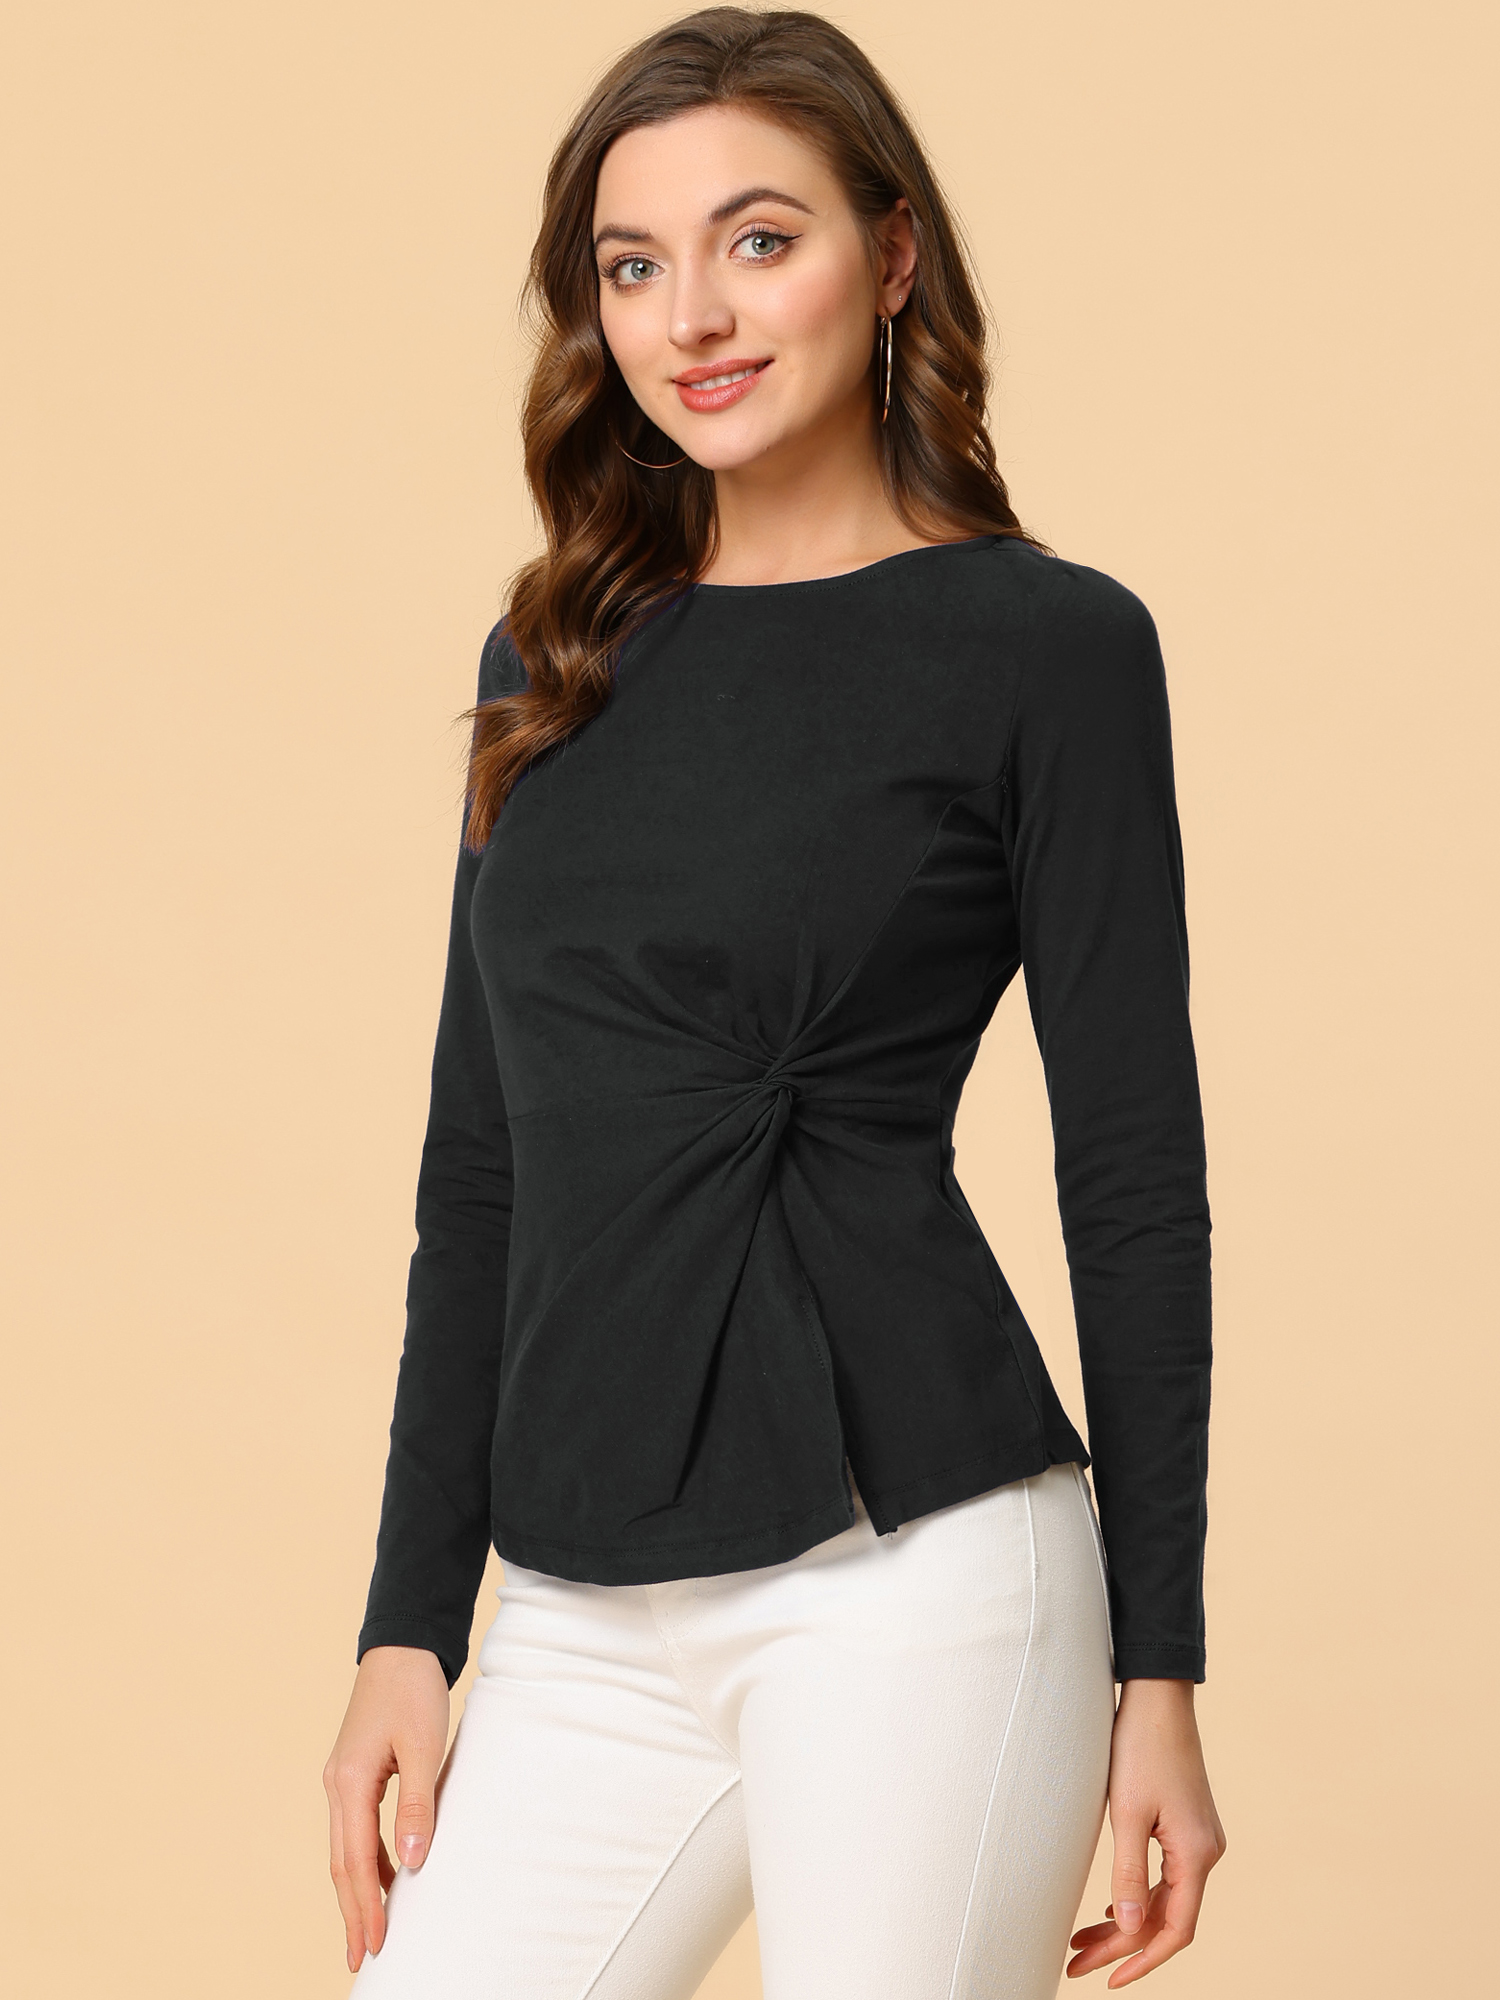 Unique Bargains Allegra K Women's Round Neck Front Twist Tops Long Sleeve Blouse Shirt